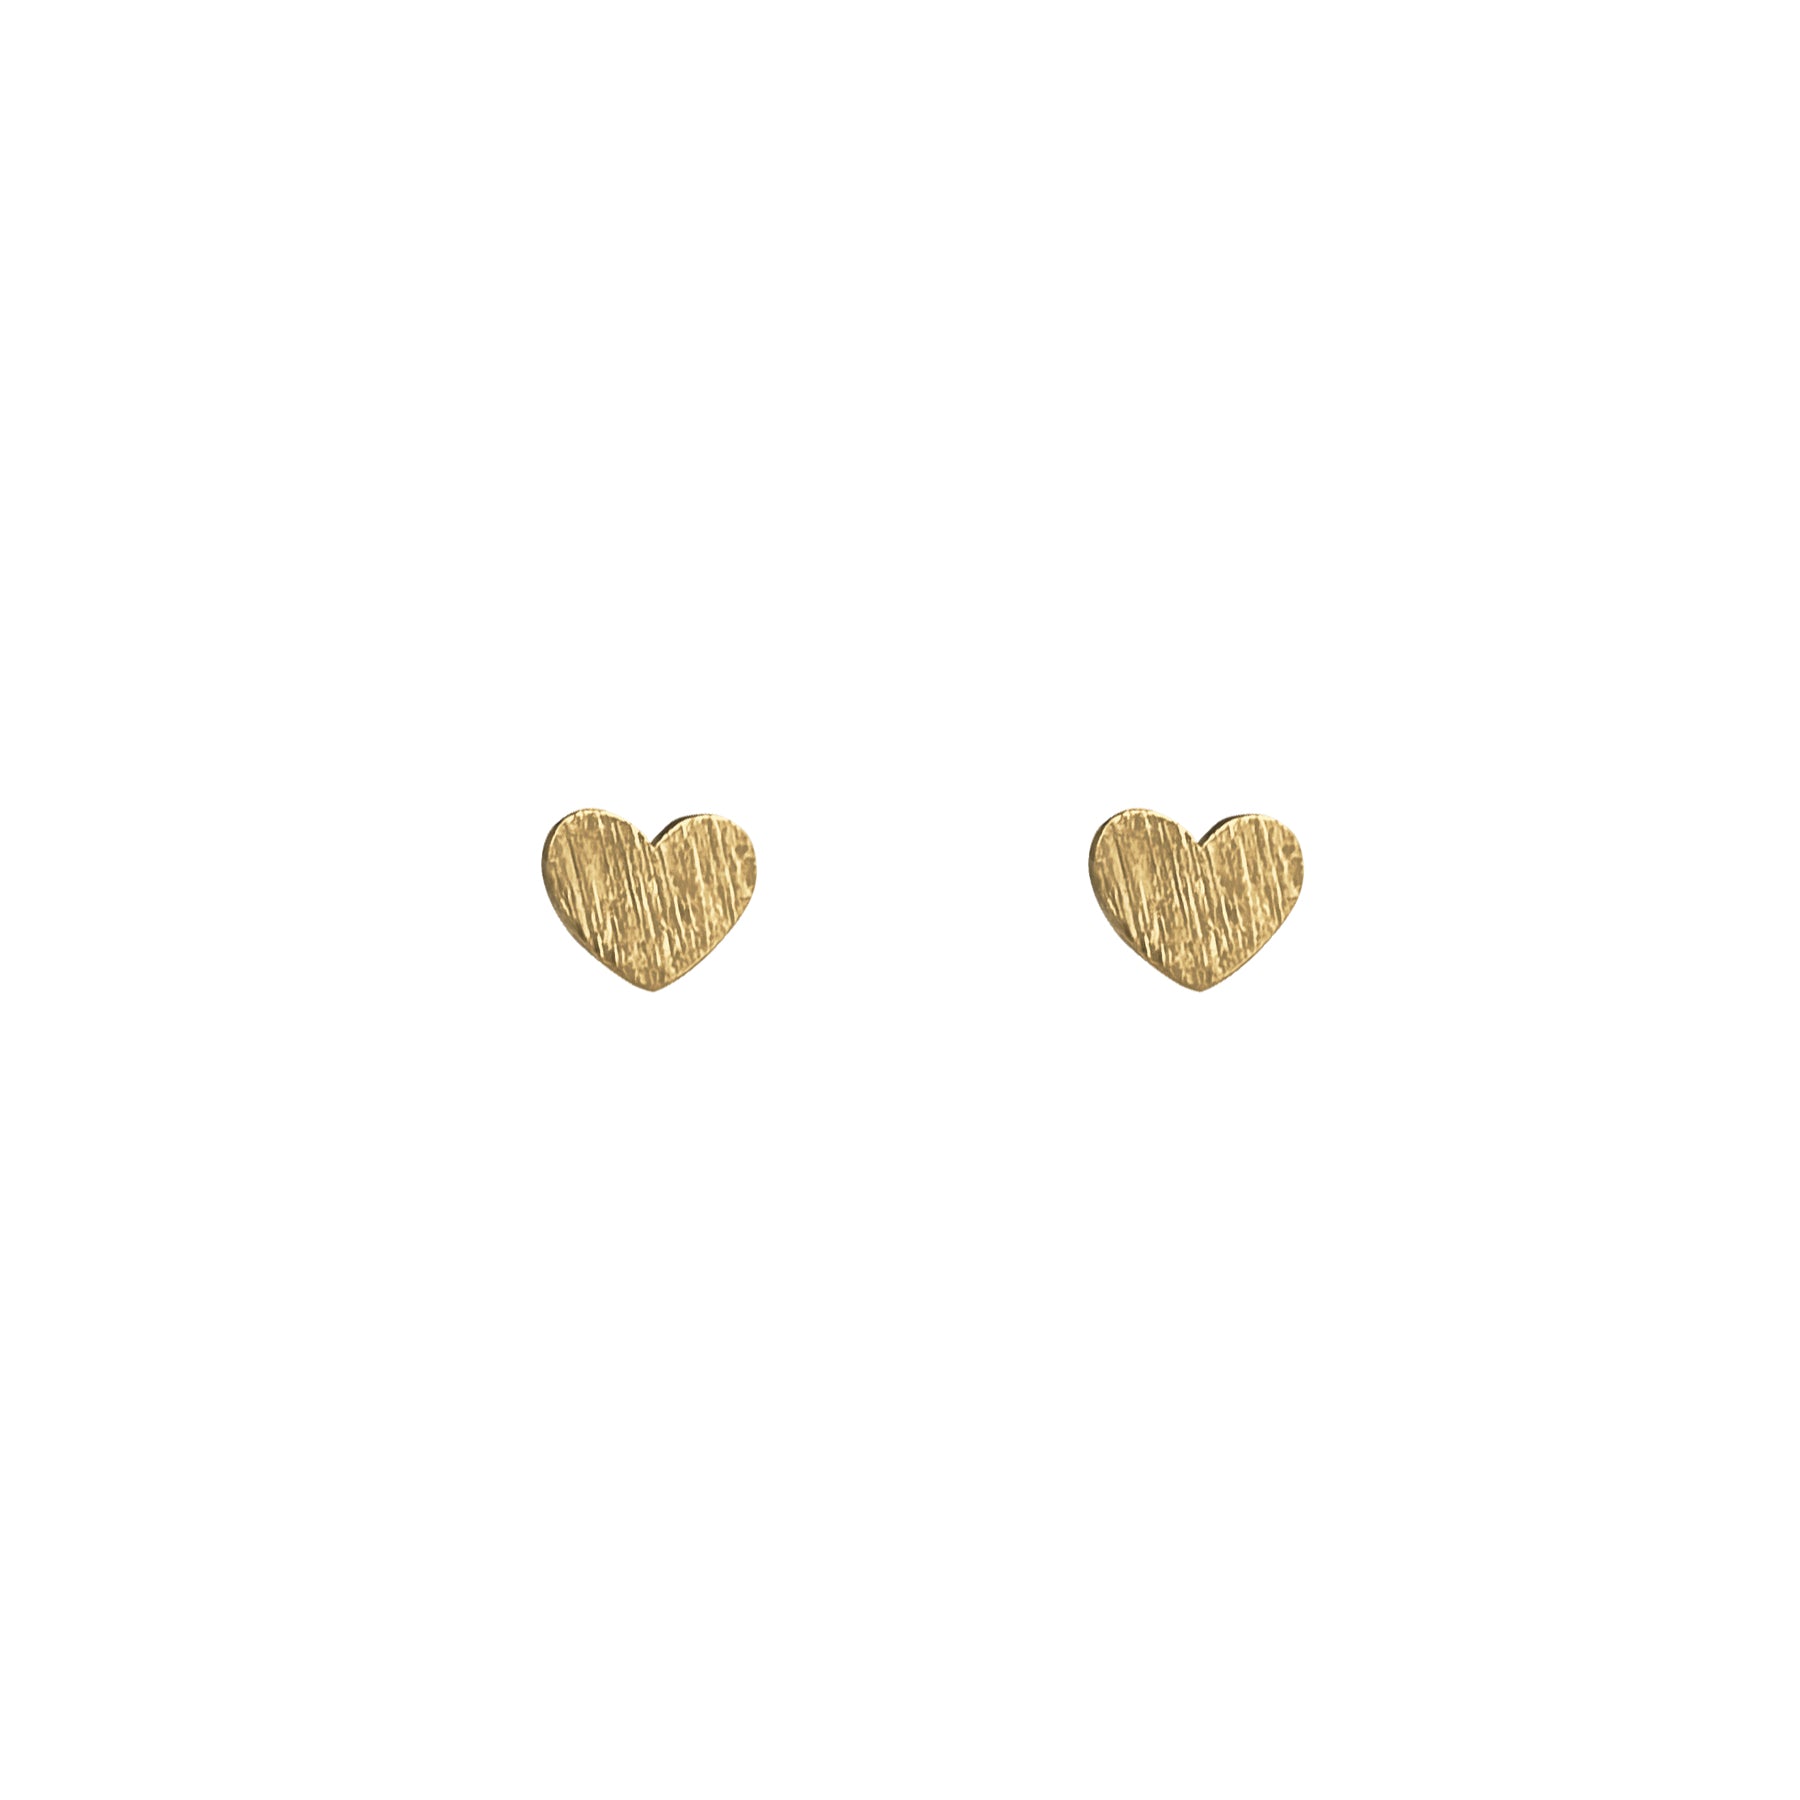 Small gold heart earrings